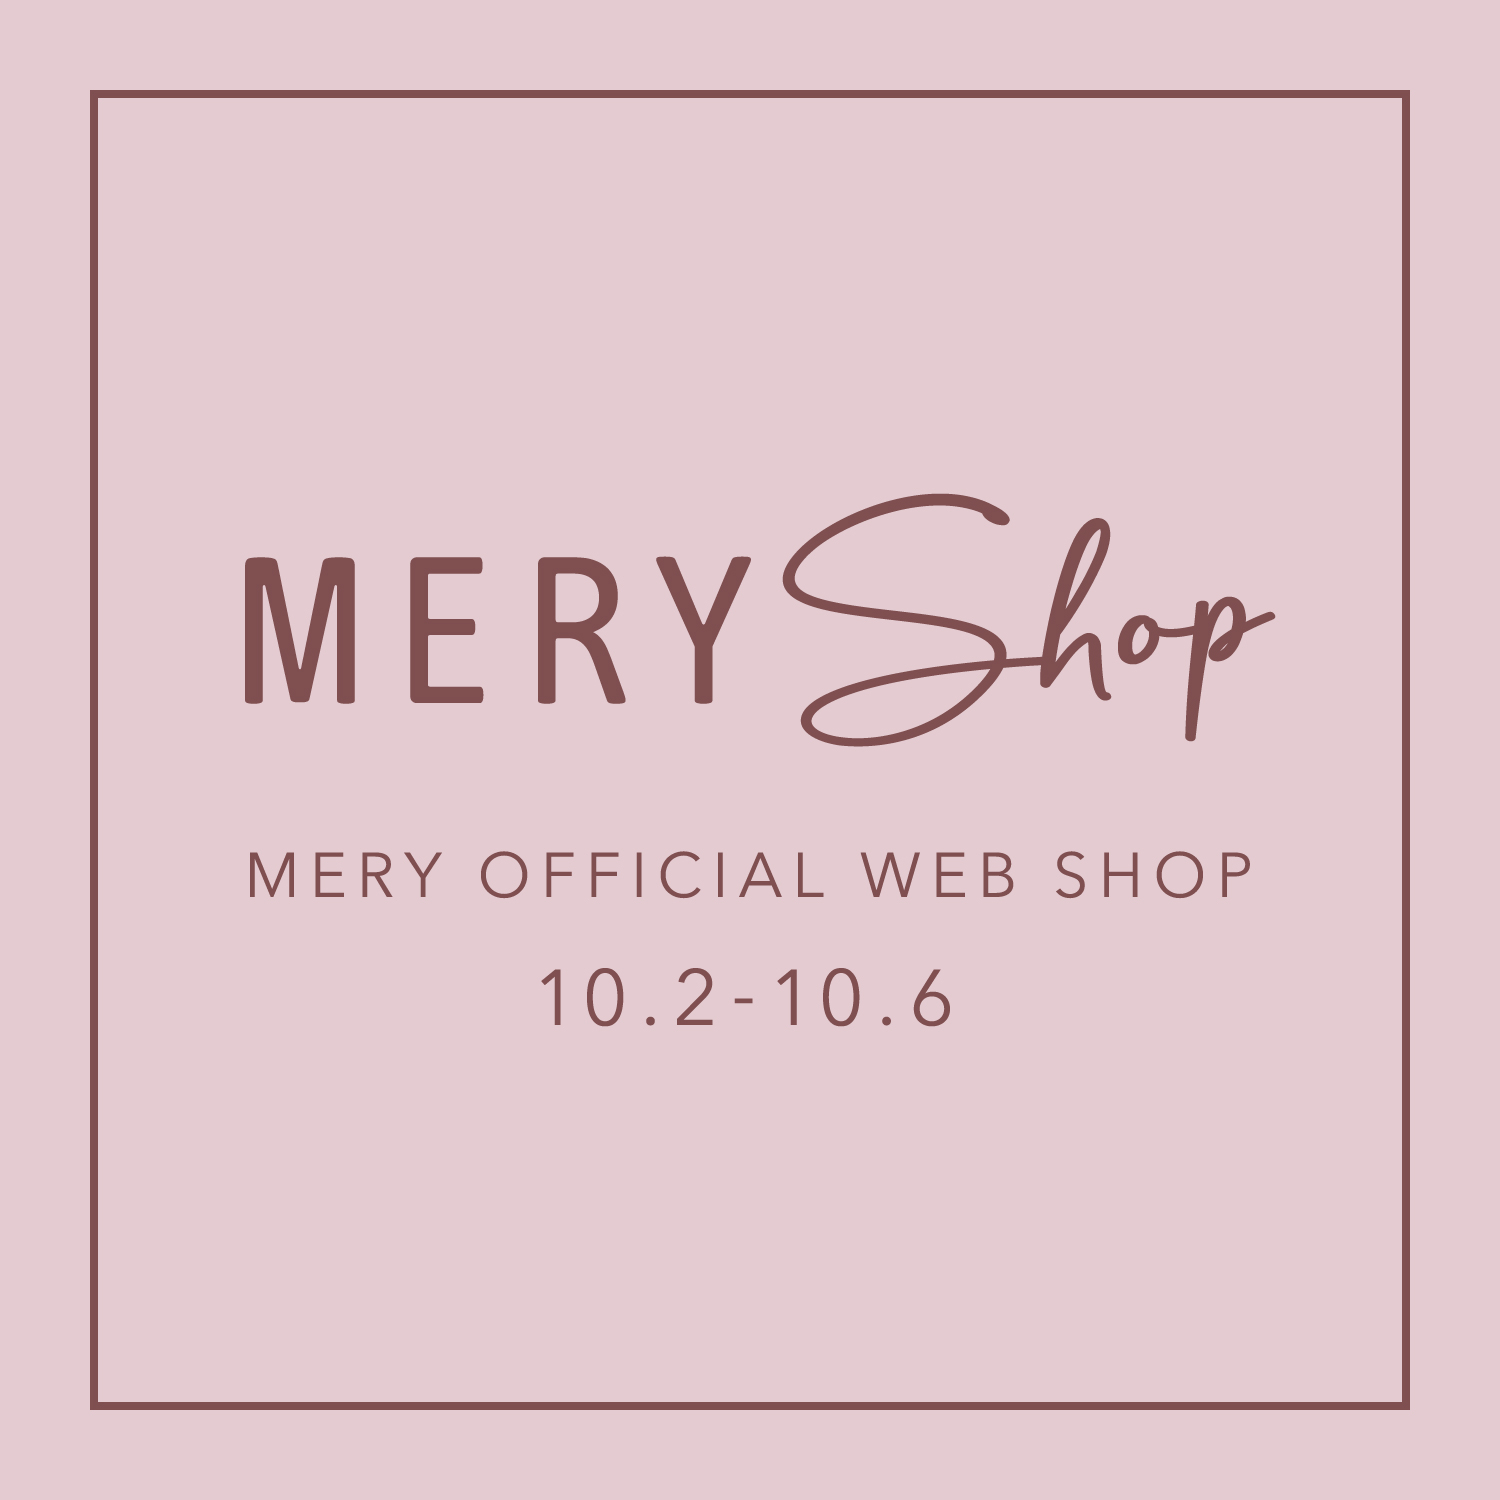 女性向けメディア Mery Meryがセレクトする かわいくなりたい を叶えるアイテムが揃う Mery Shop スタート 株式会社mery のプレスリリース